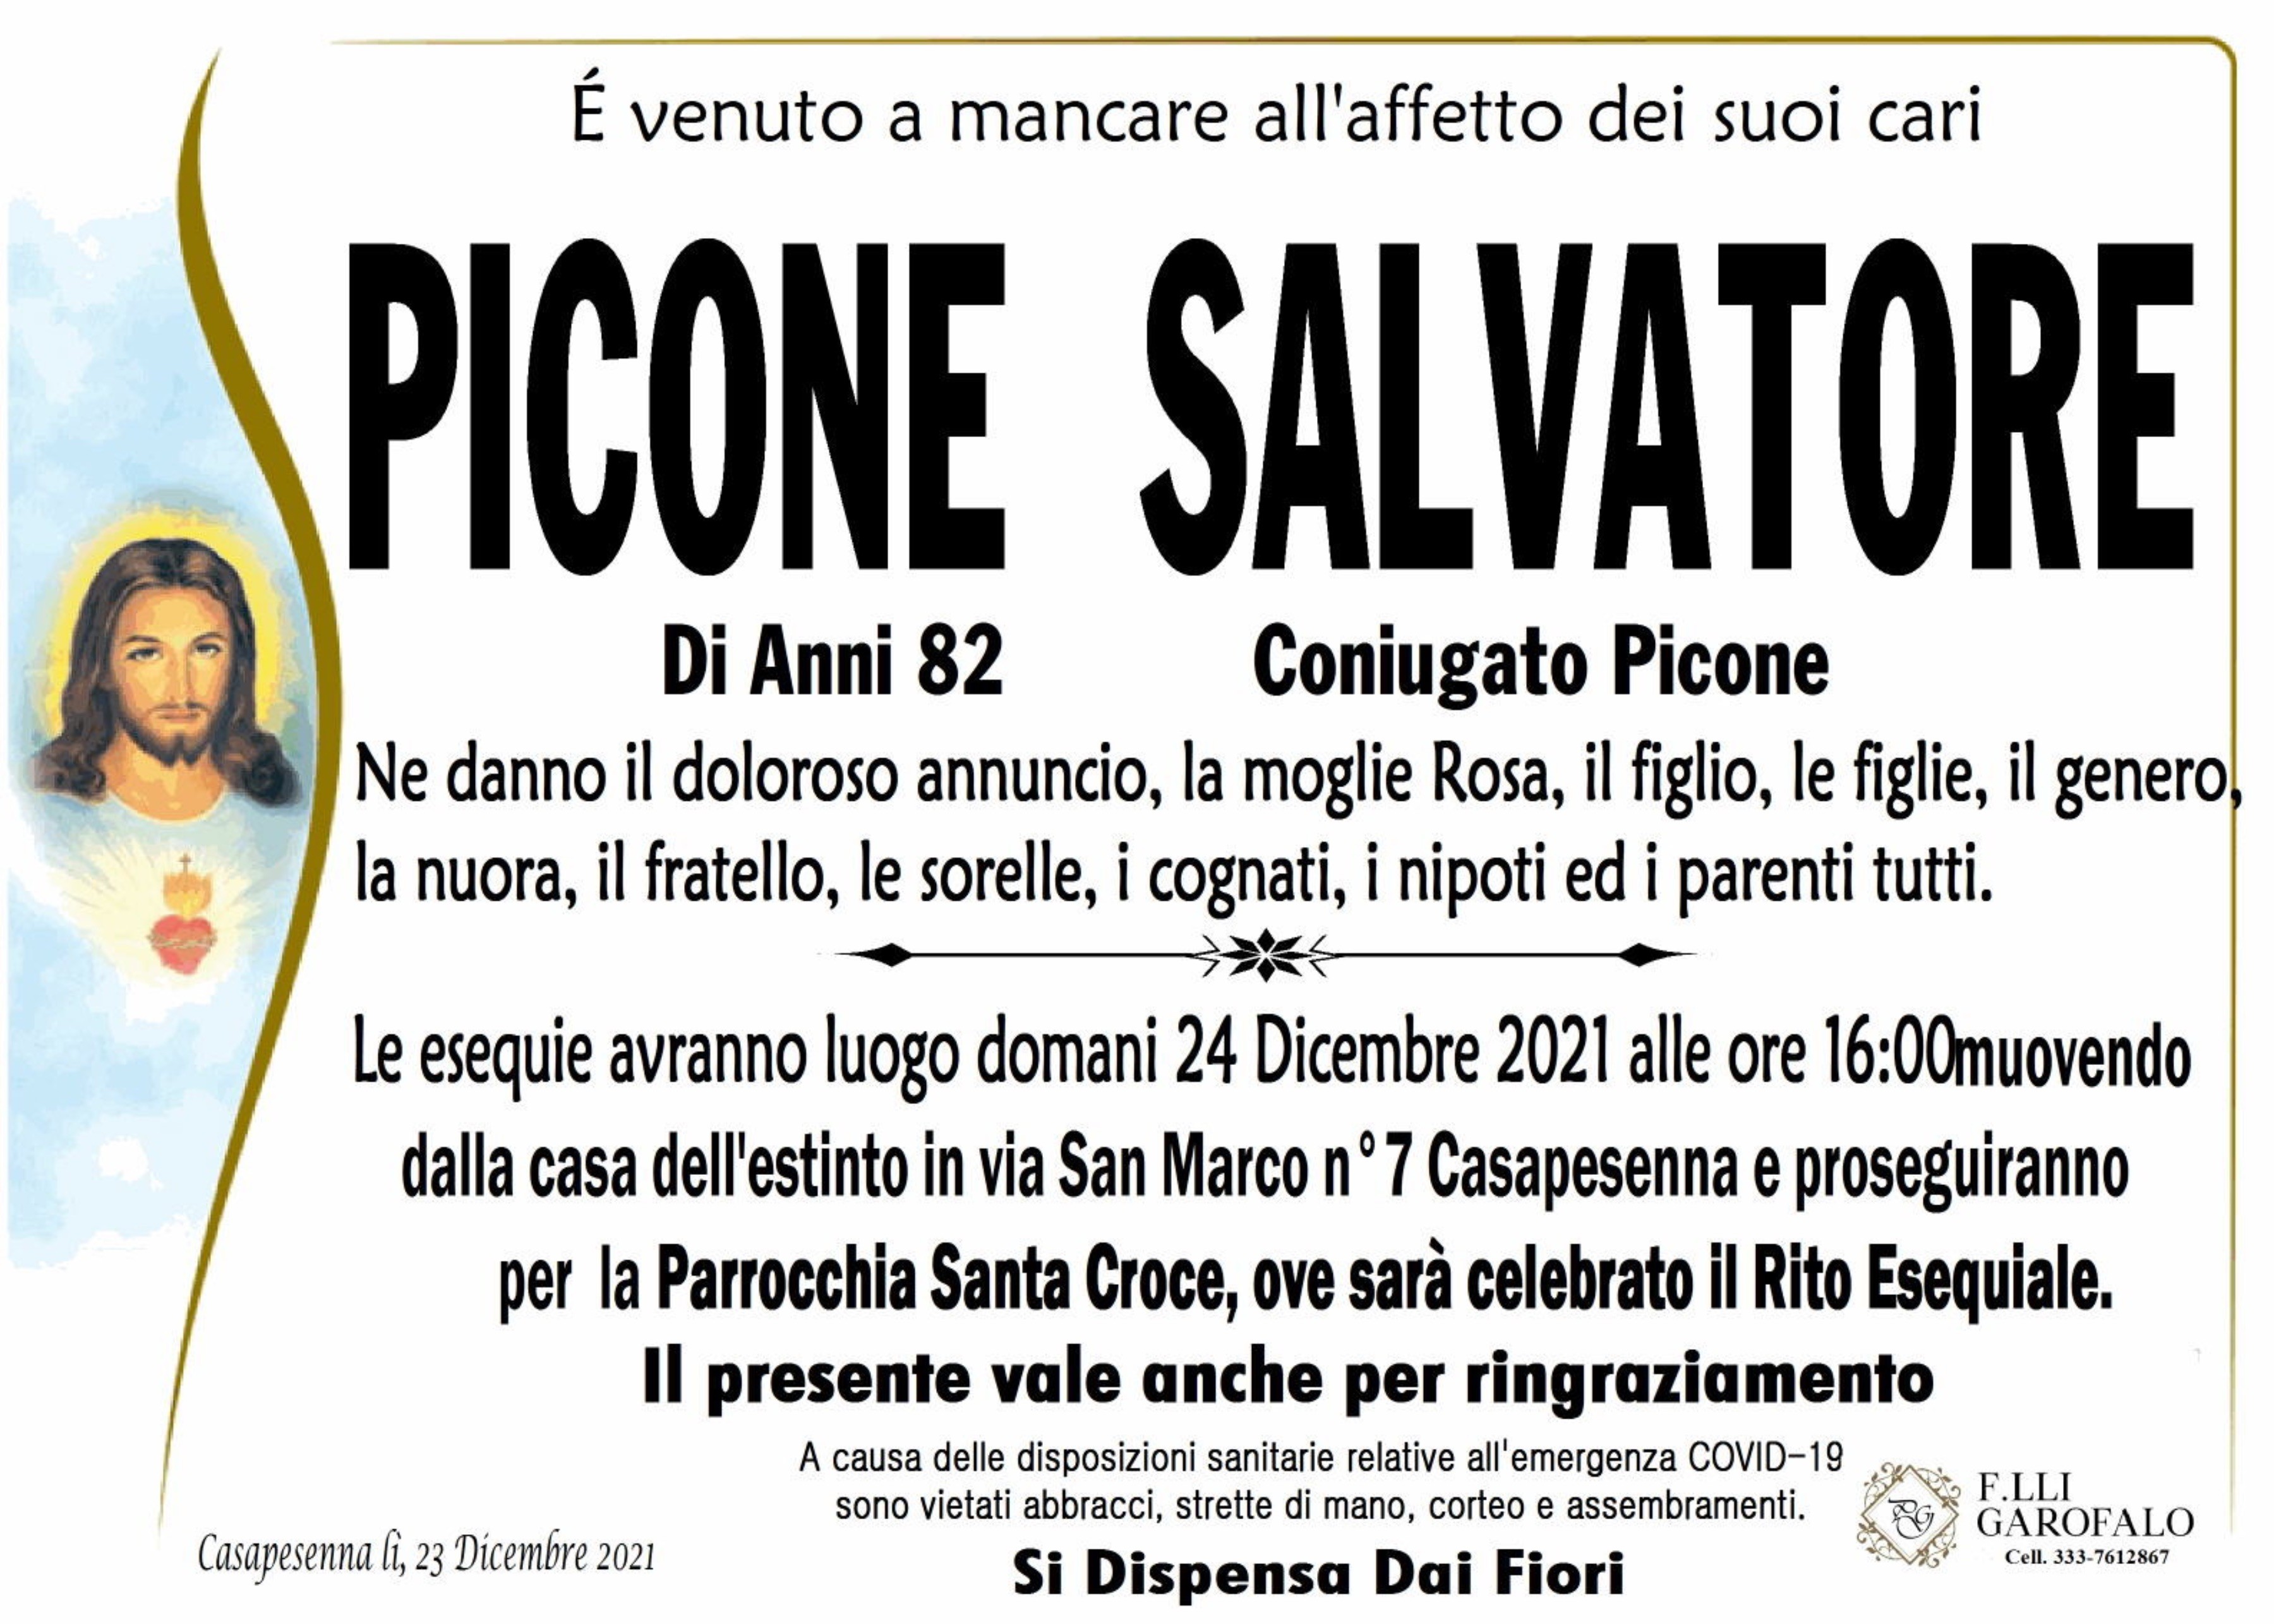 Salvatore Picone